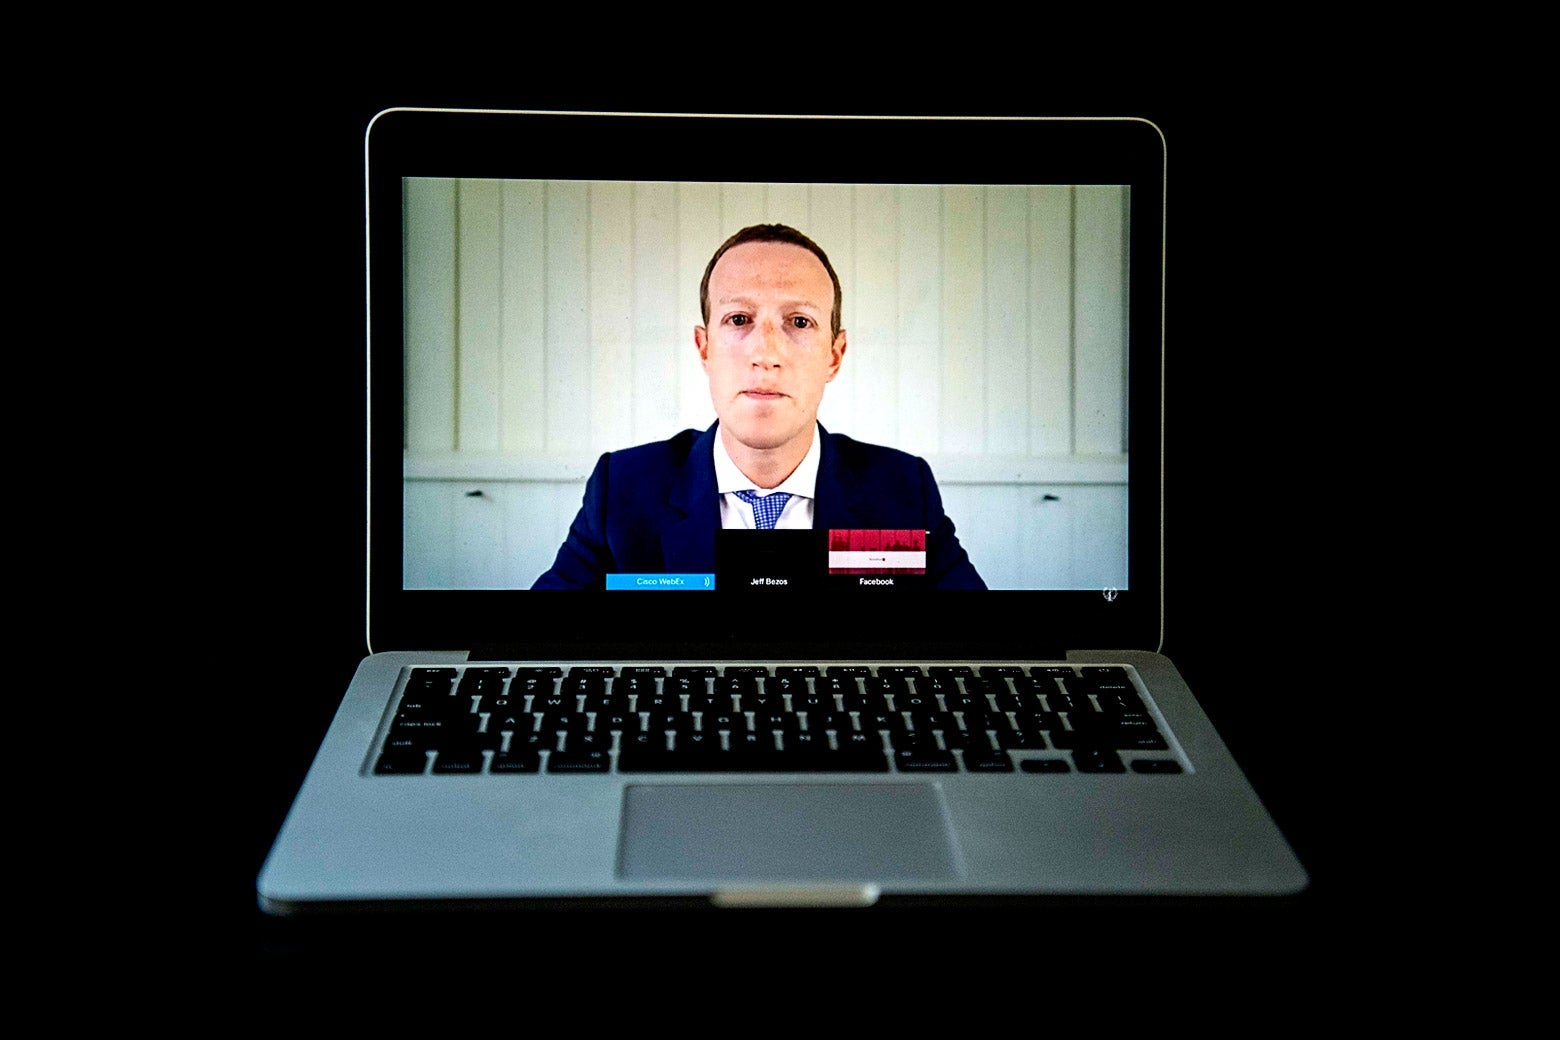 Mark Zuckerberg in a suit as seen on a laptop.